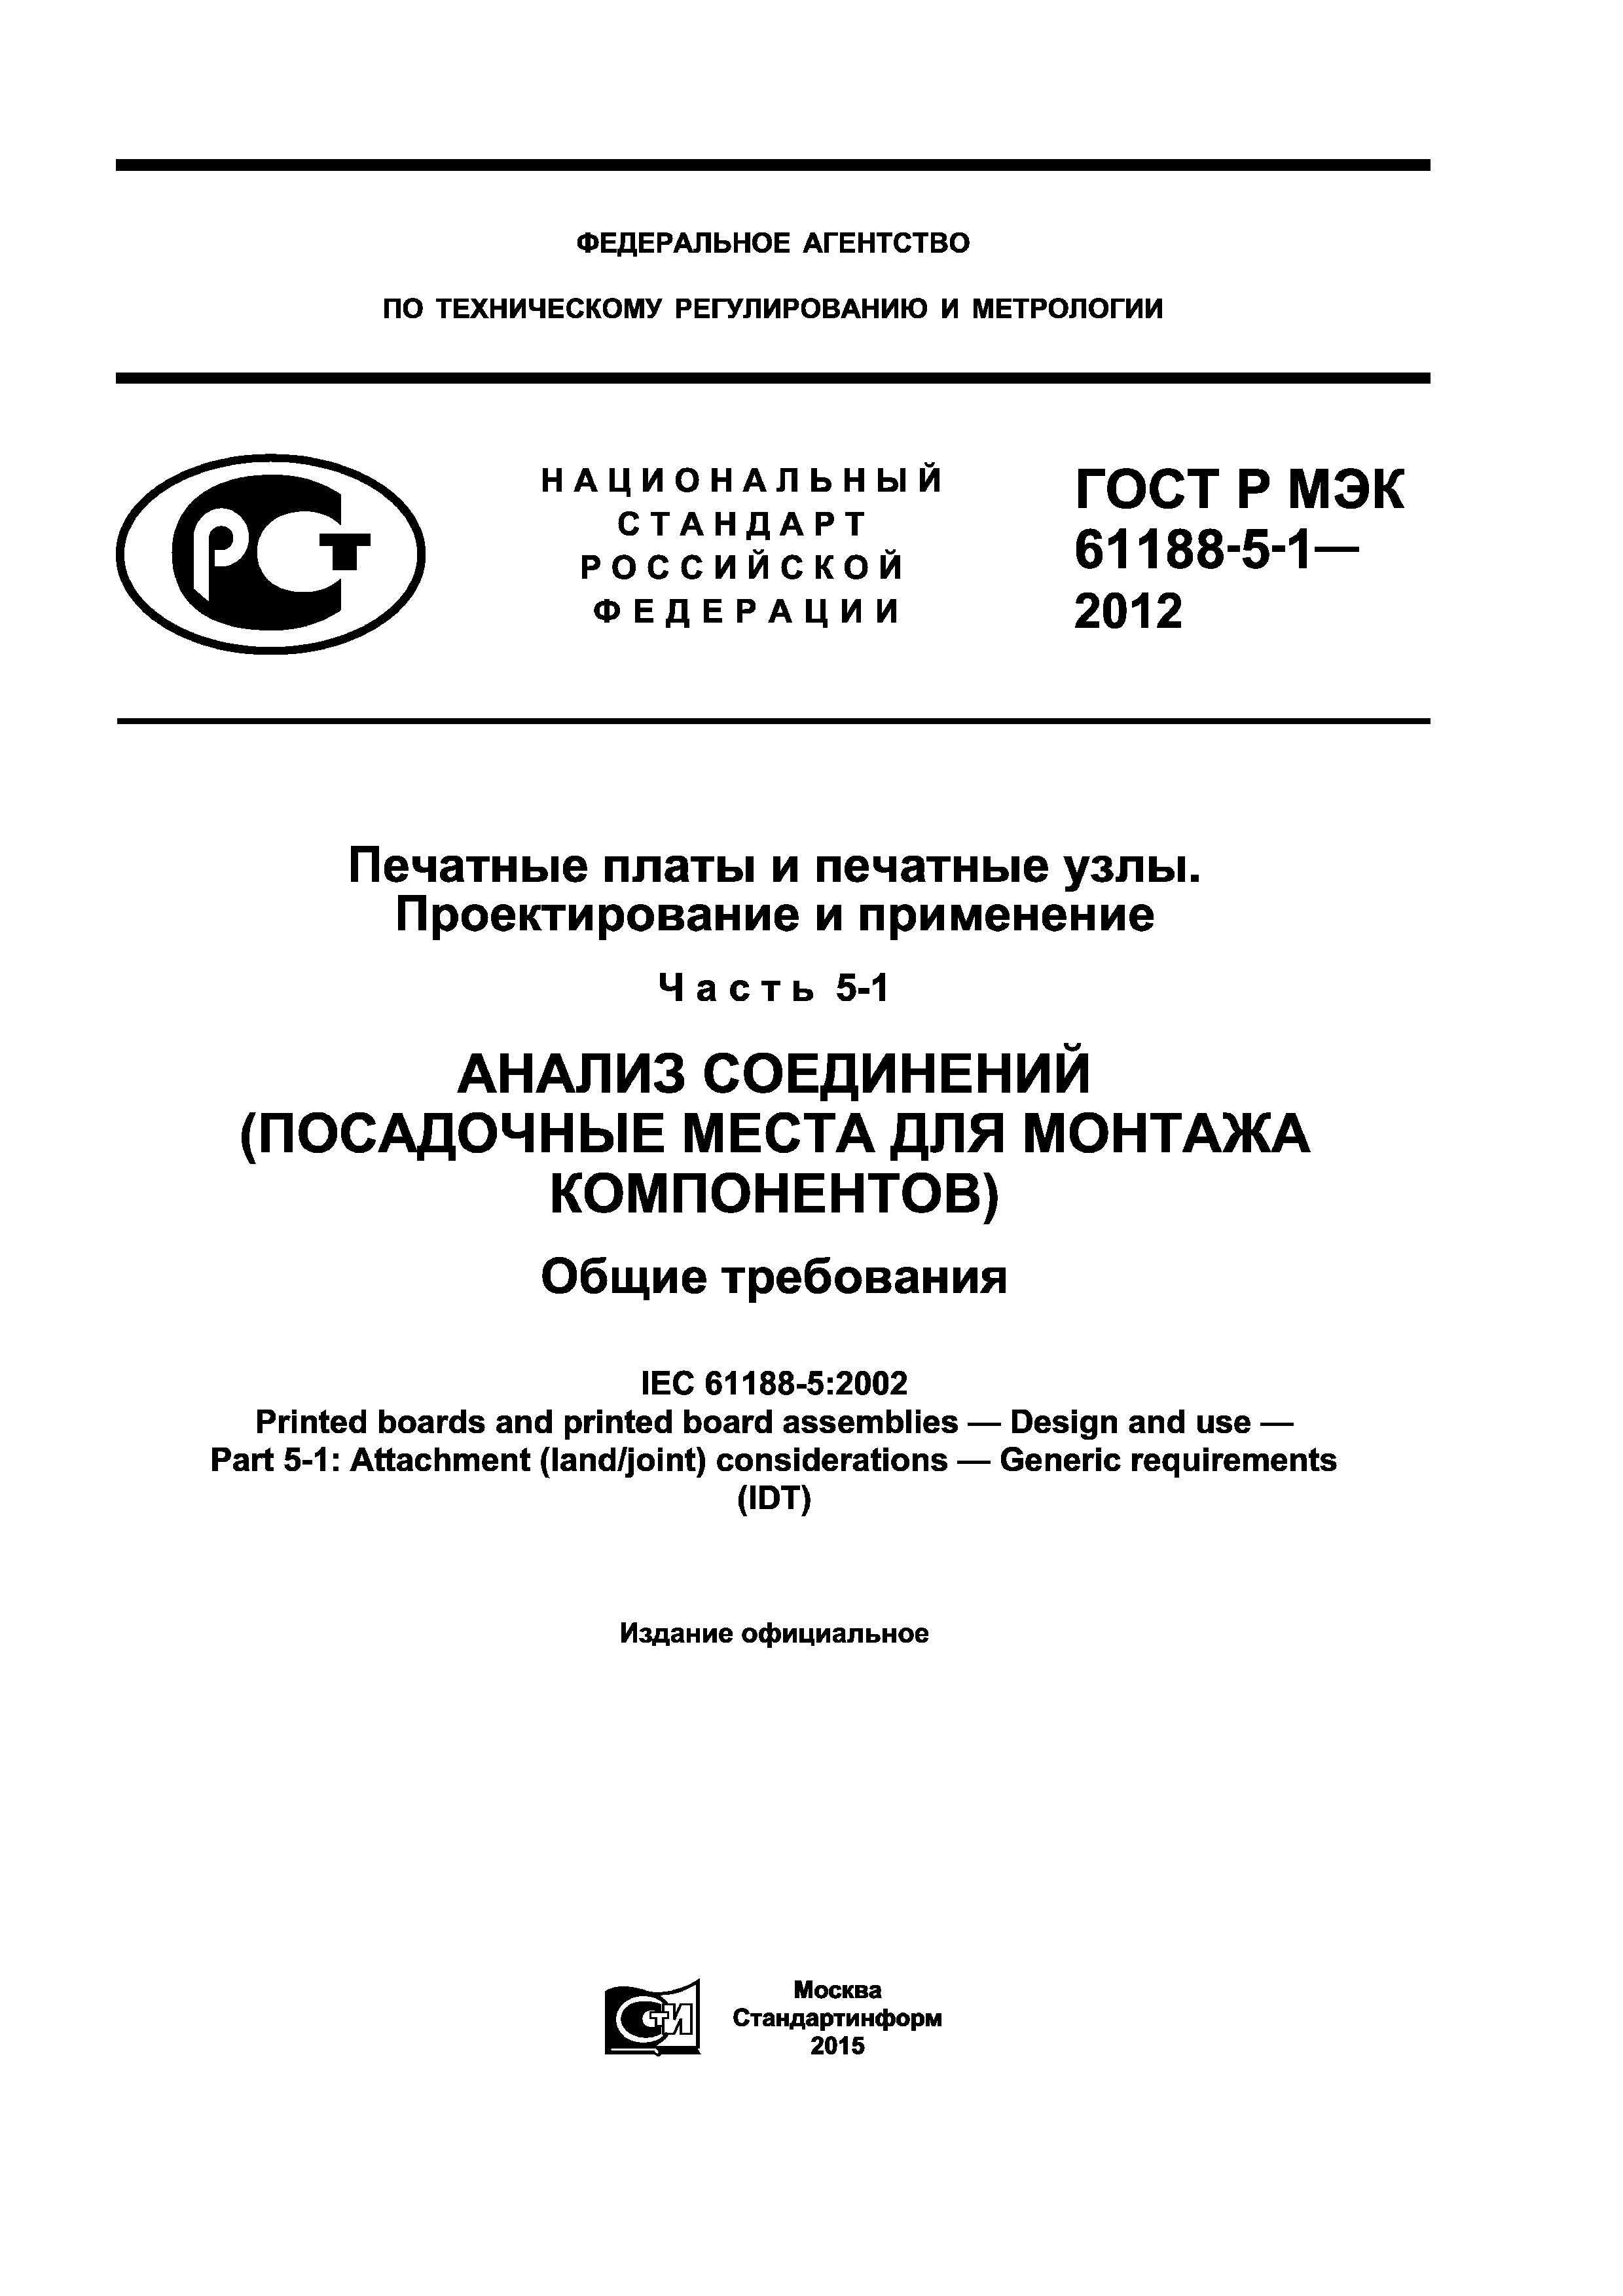 ГОСТ Р МЭК 61188-5-1-2012